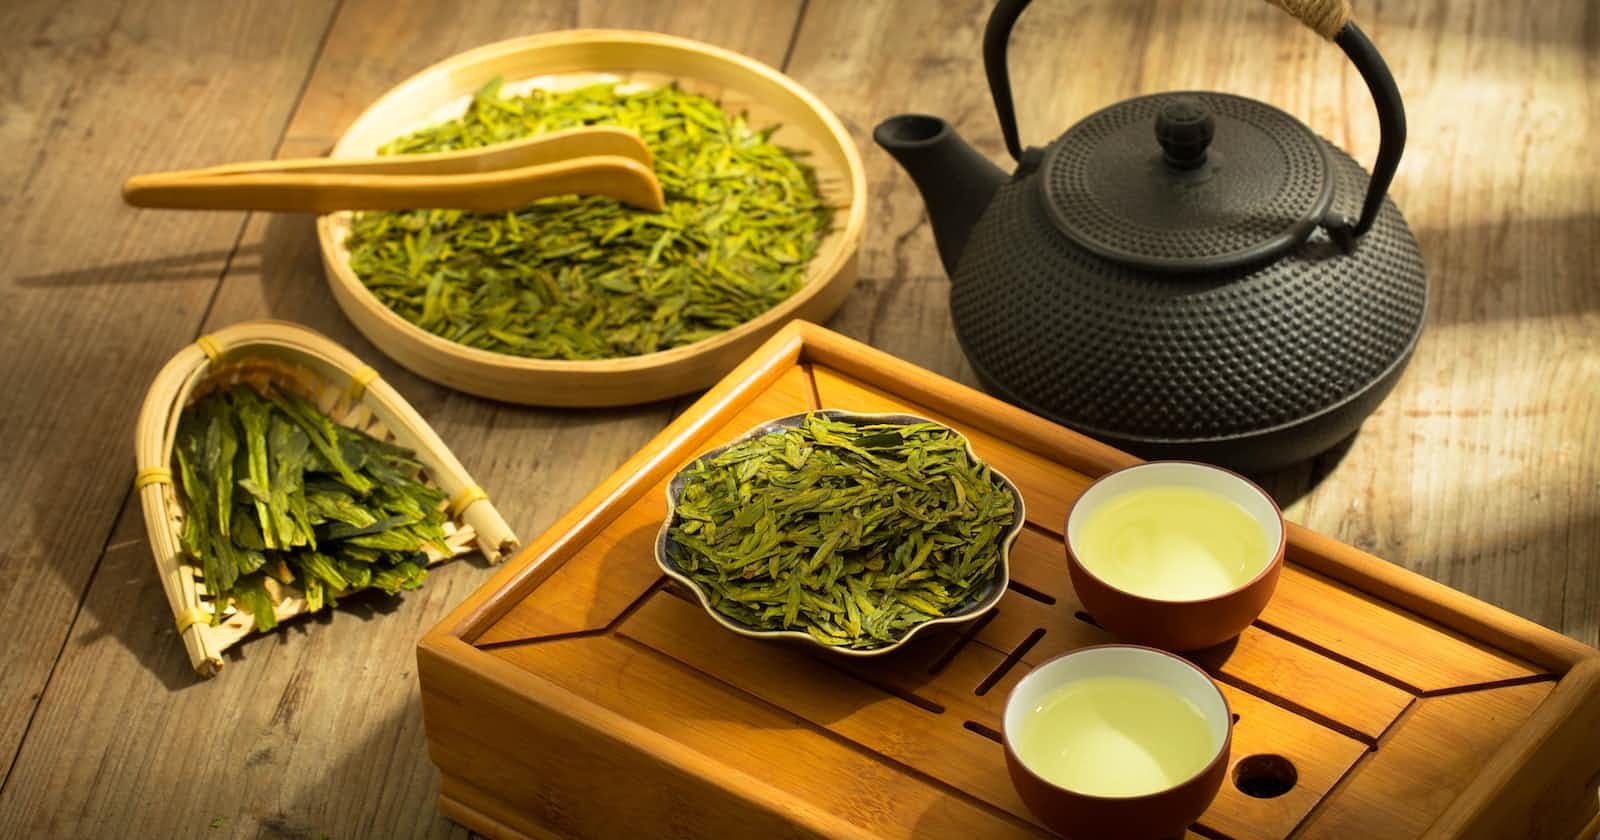 Kogo Chińczycy nazywają 'zieloną herbatą'? - chińskie idiomy i powiedzenia związane z herbatą